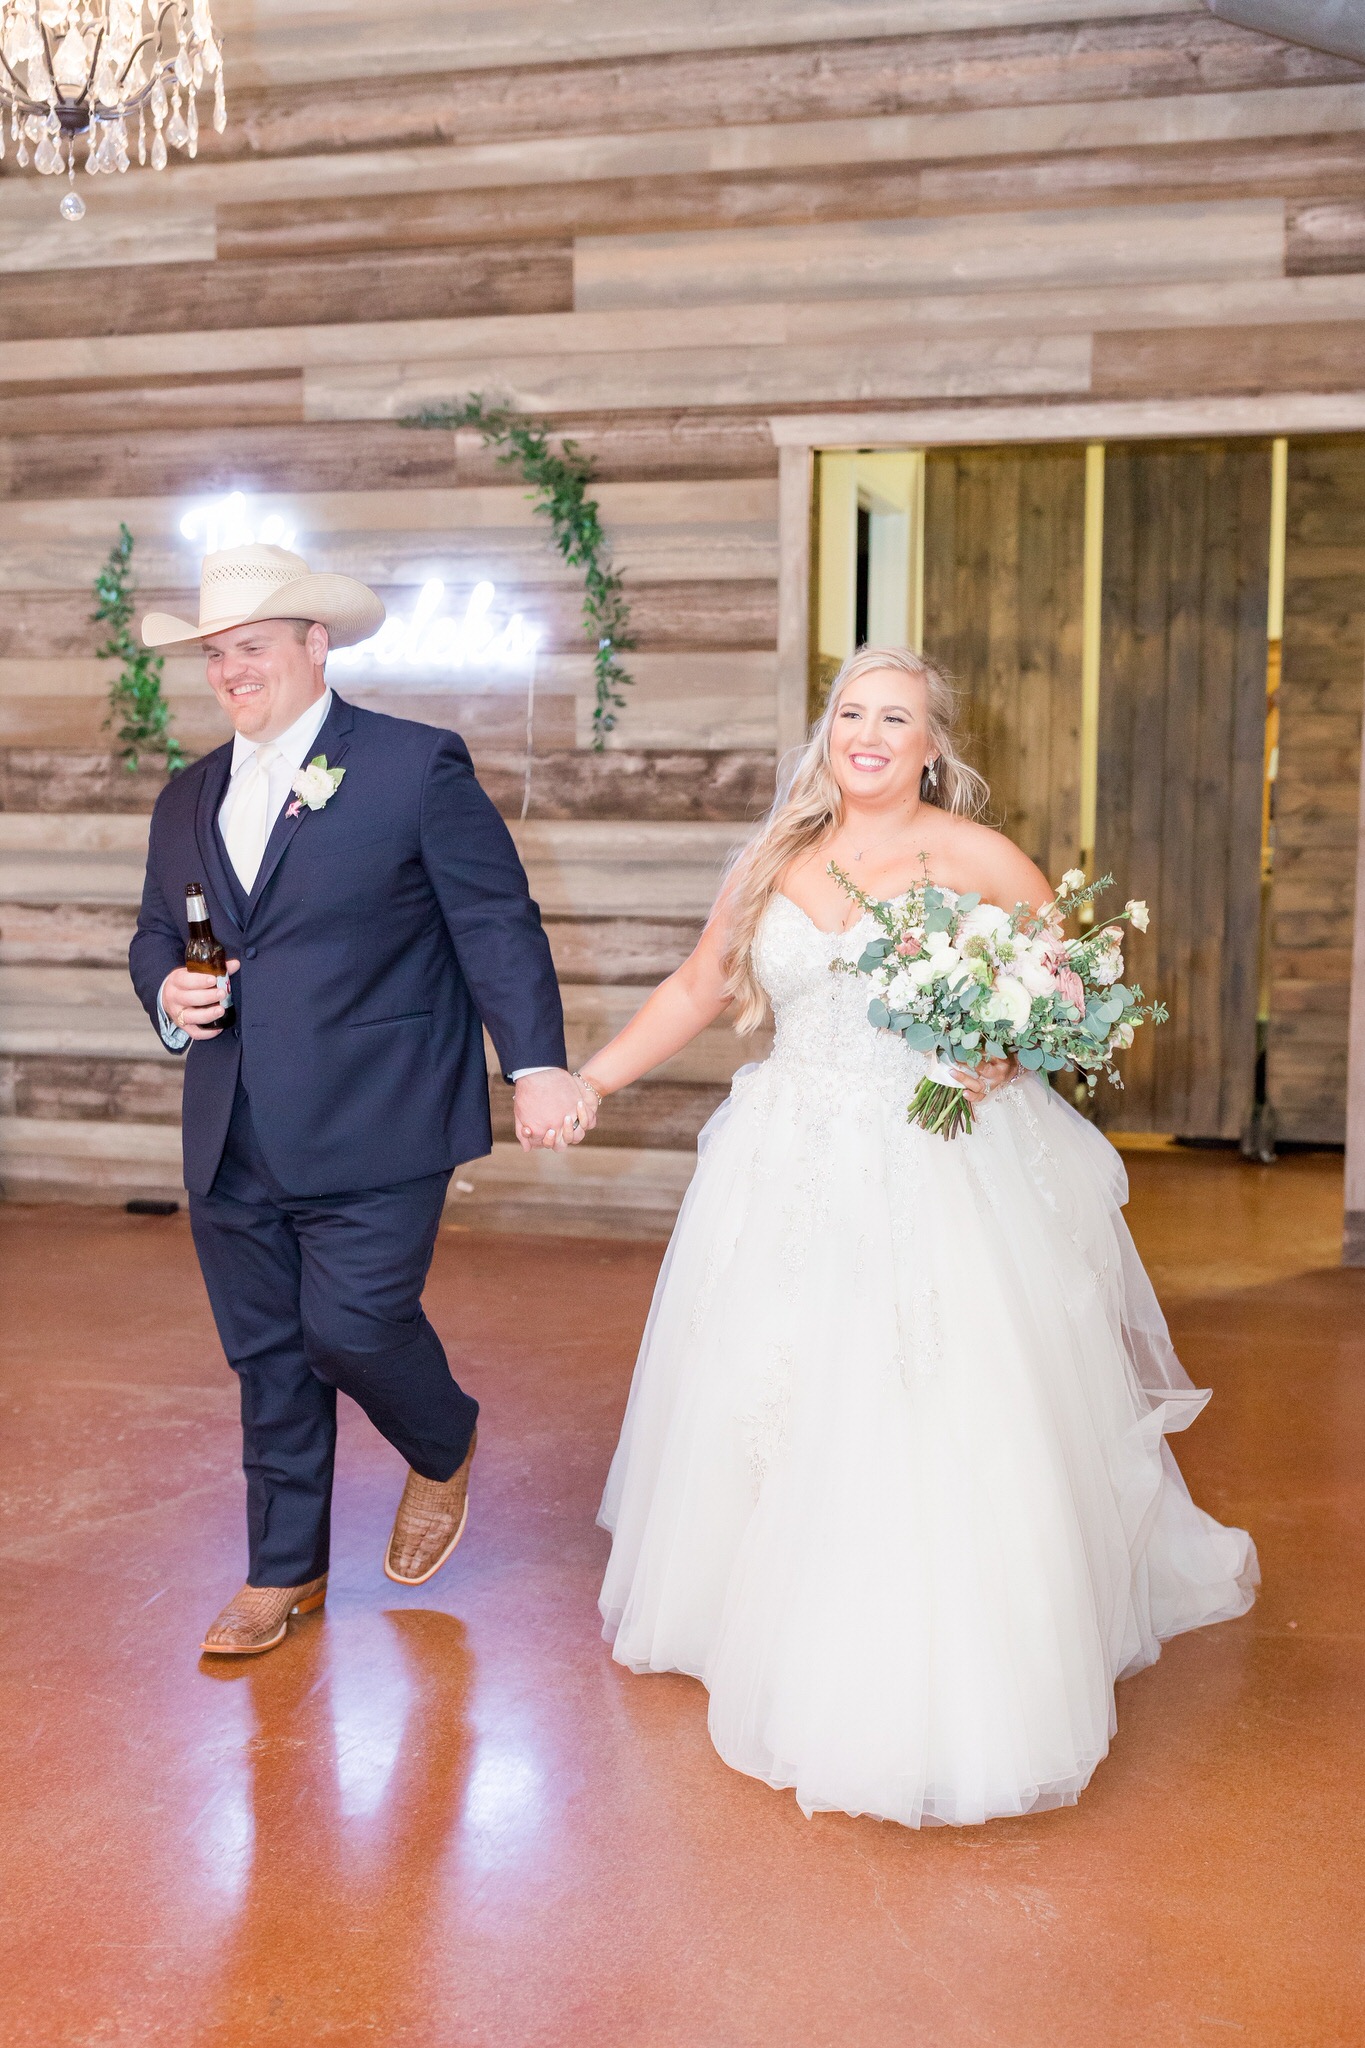 Spring Wedding at Firefly Farm in Wimberley, TX by Dawn Elizabeth Studios, San Antonio Wedding Photographer